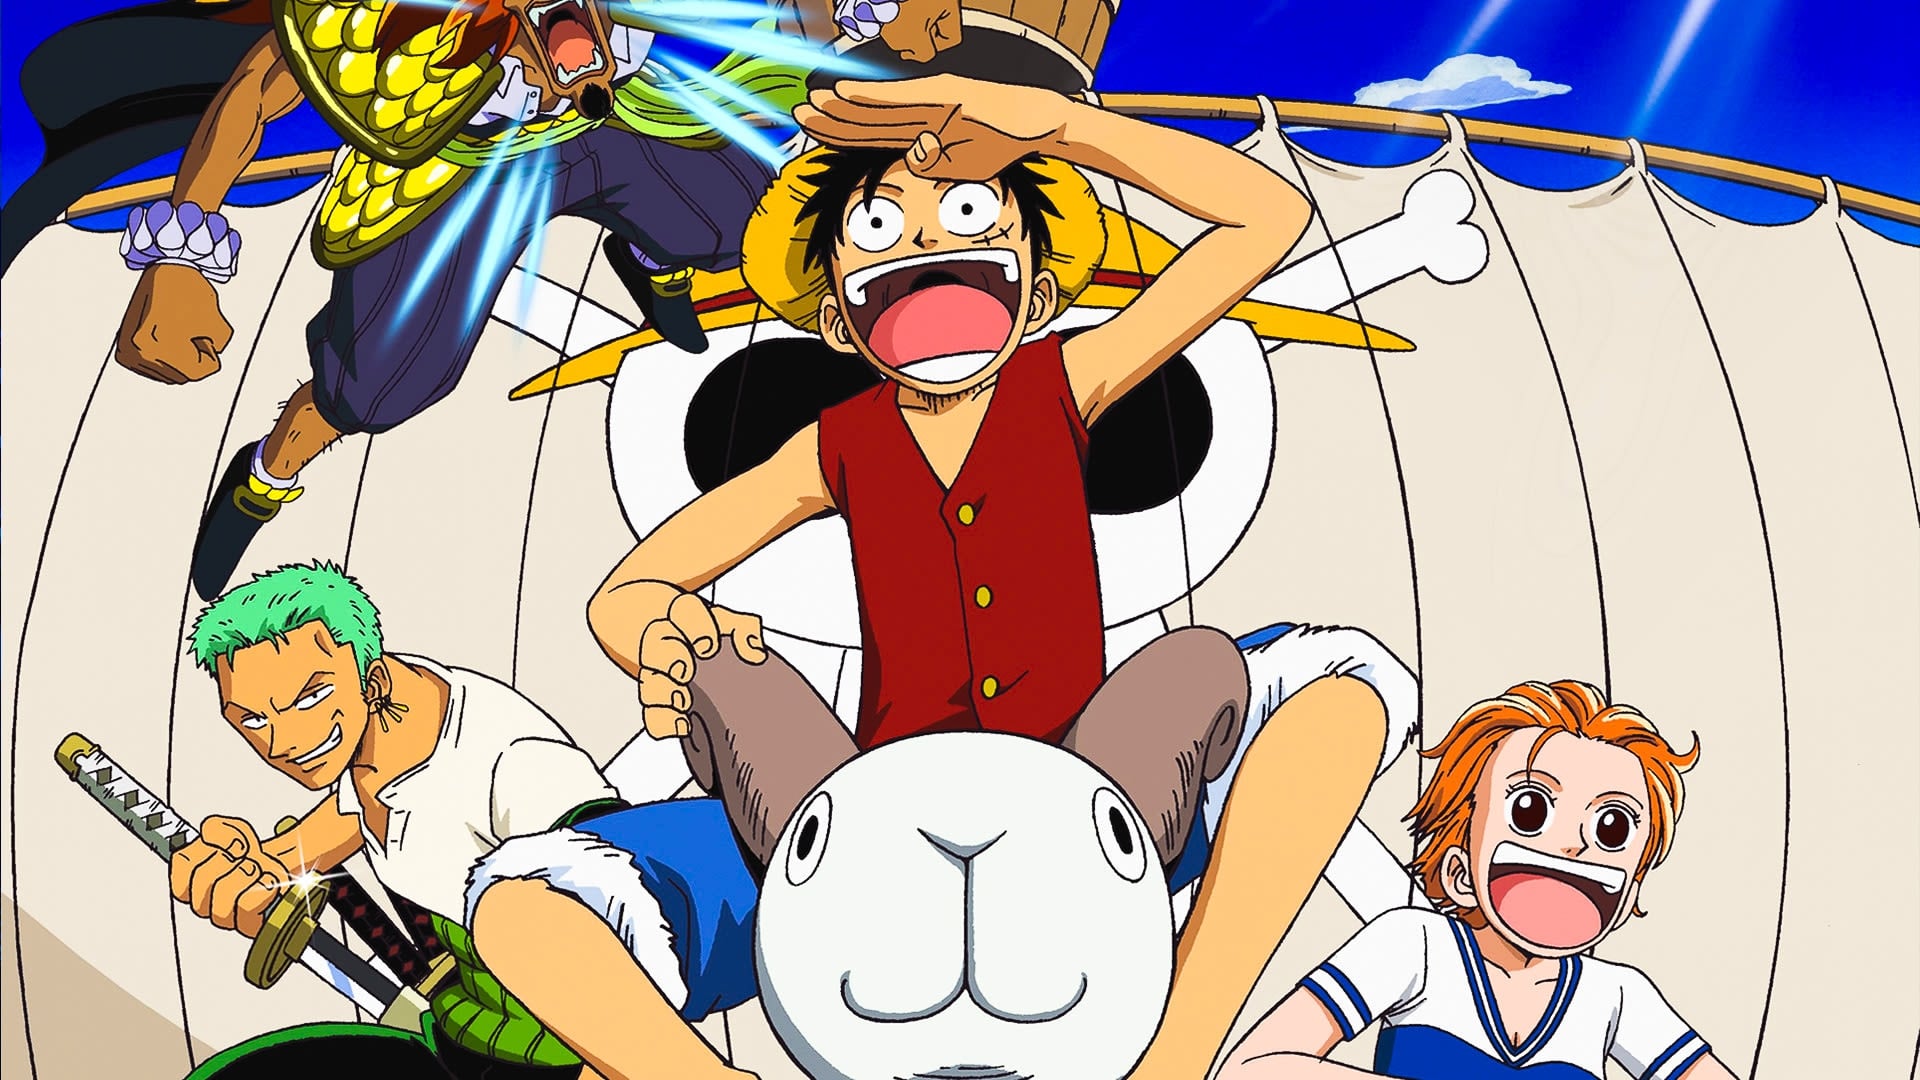 One Piece Filme 01: O Grande Pirata do Ouro! (2000) - Imagens de